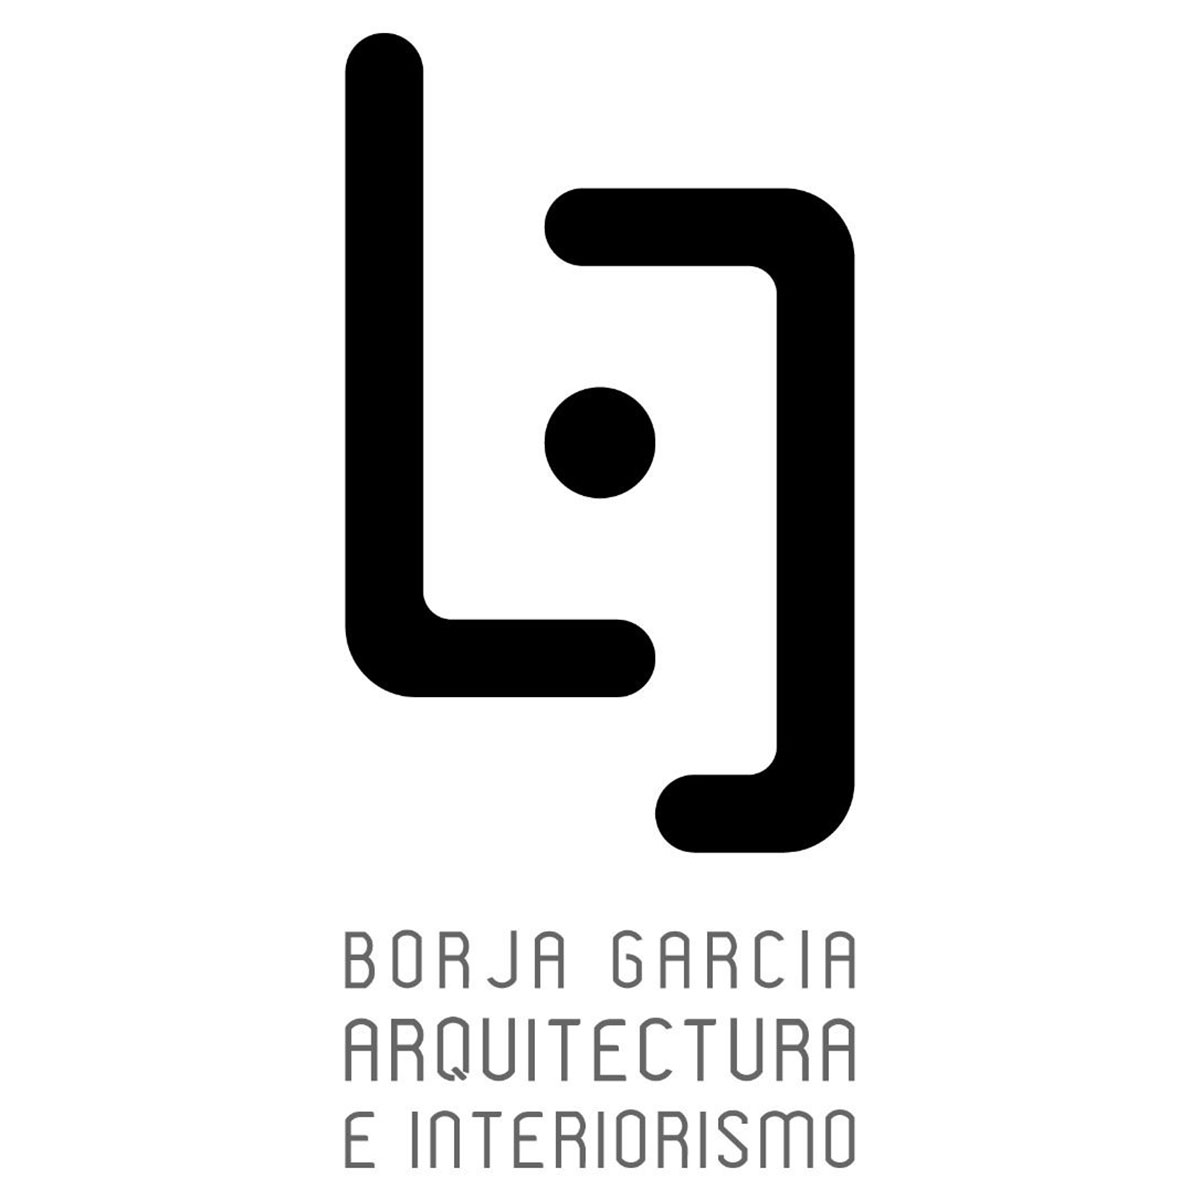 Borja Garcia Arquitectura Interiorismo